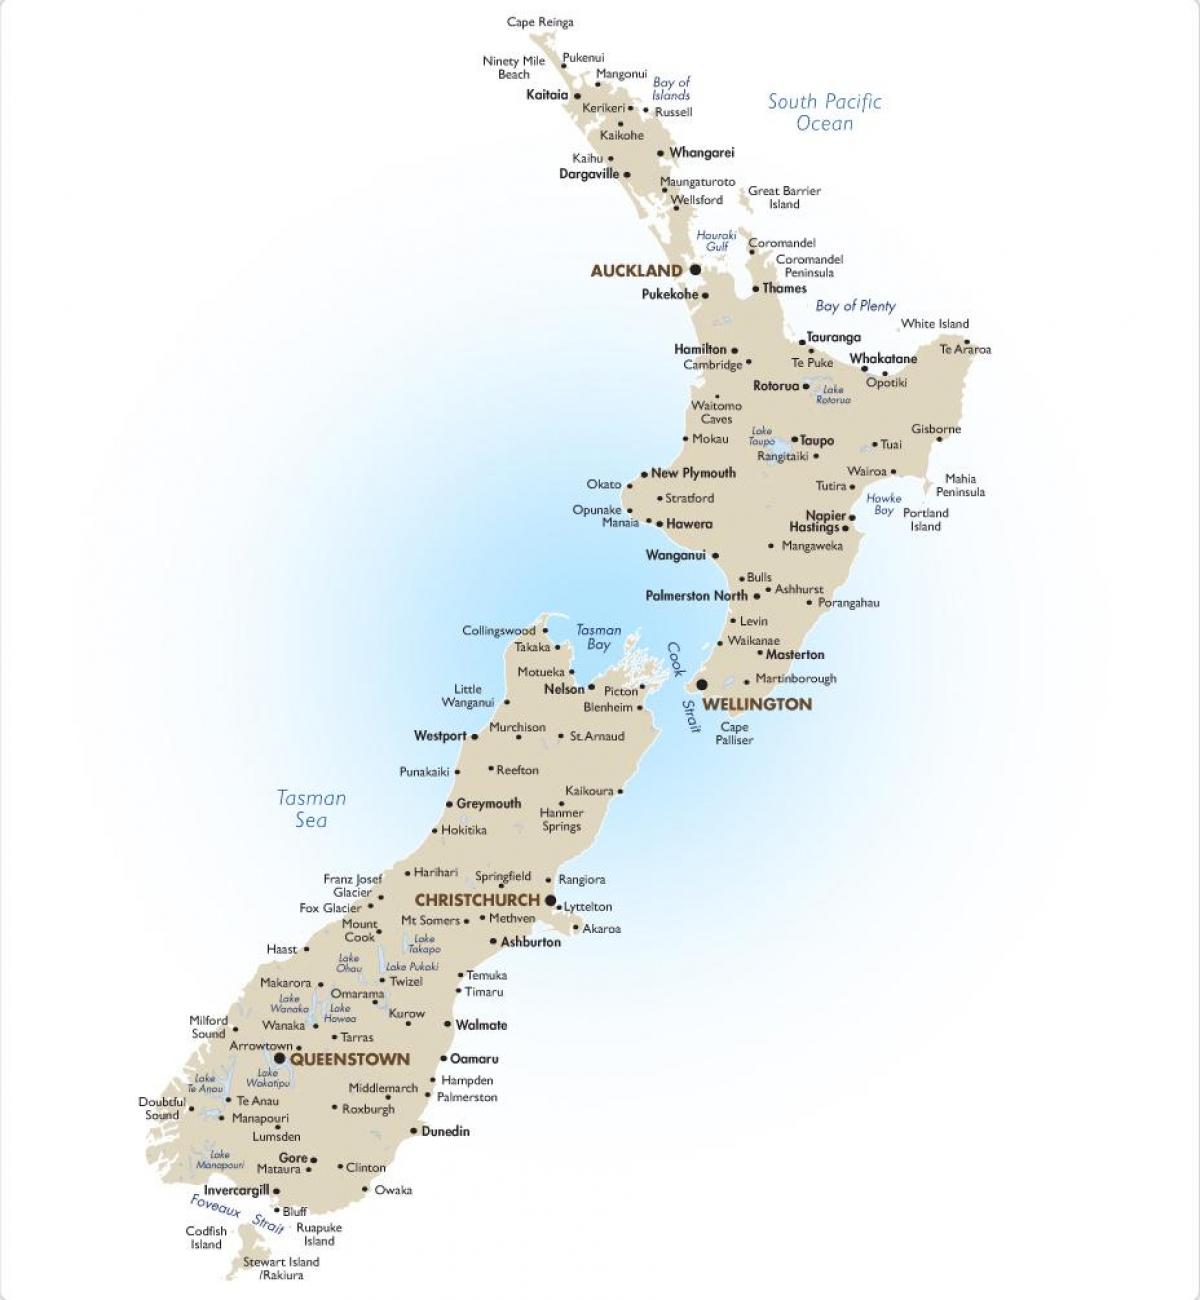 რუკა ახალი ზელანდია ერთად დიდ ქალაქებში